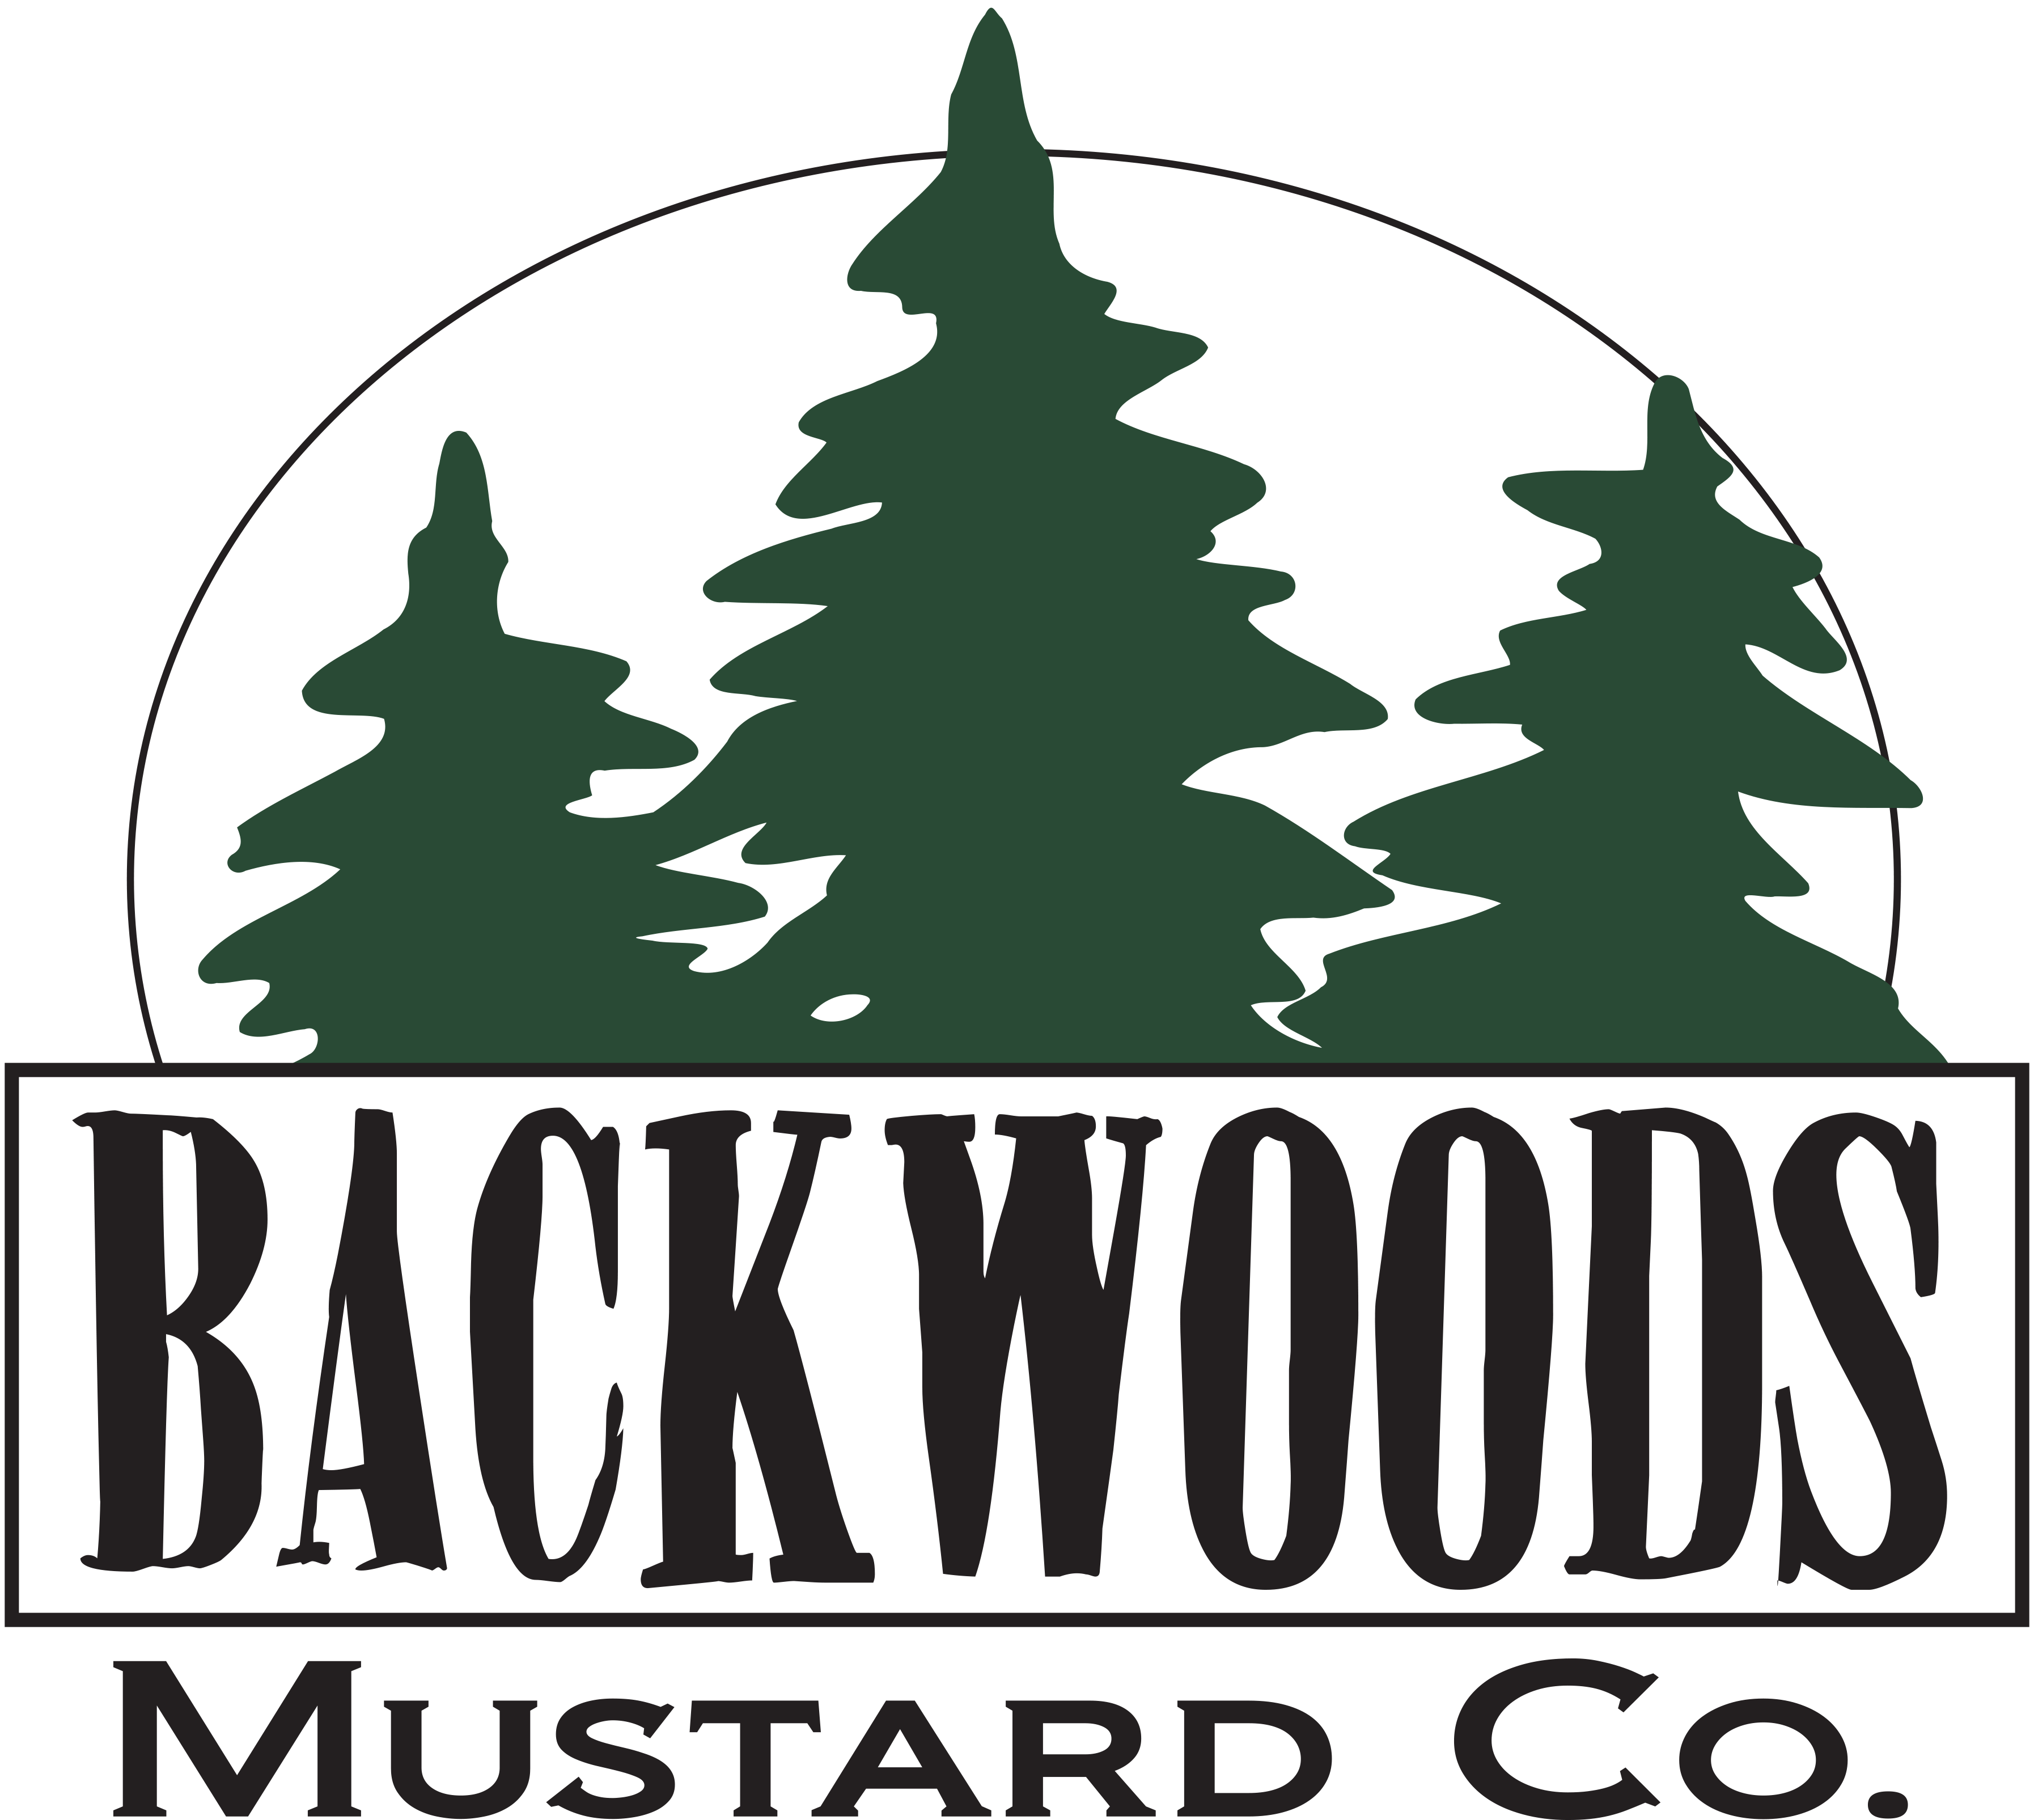 Backwoods Mustard Company